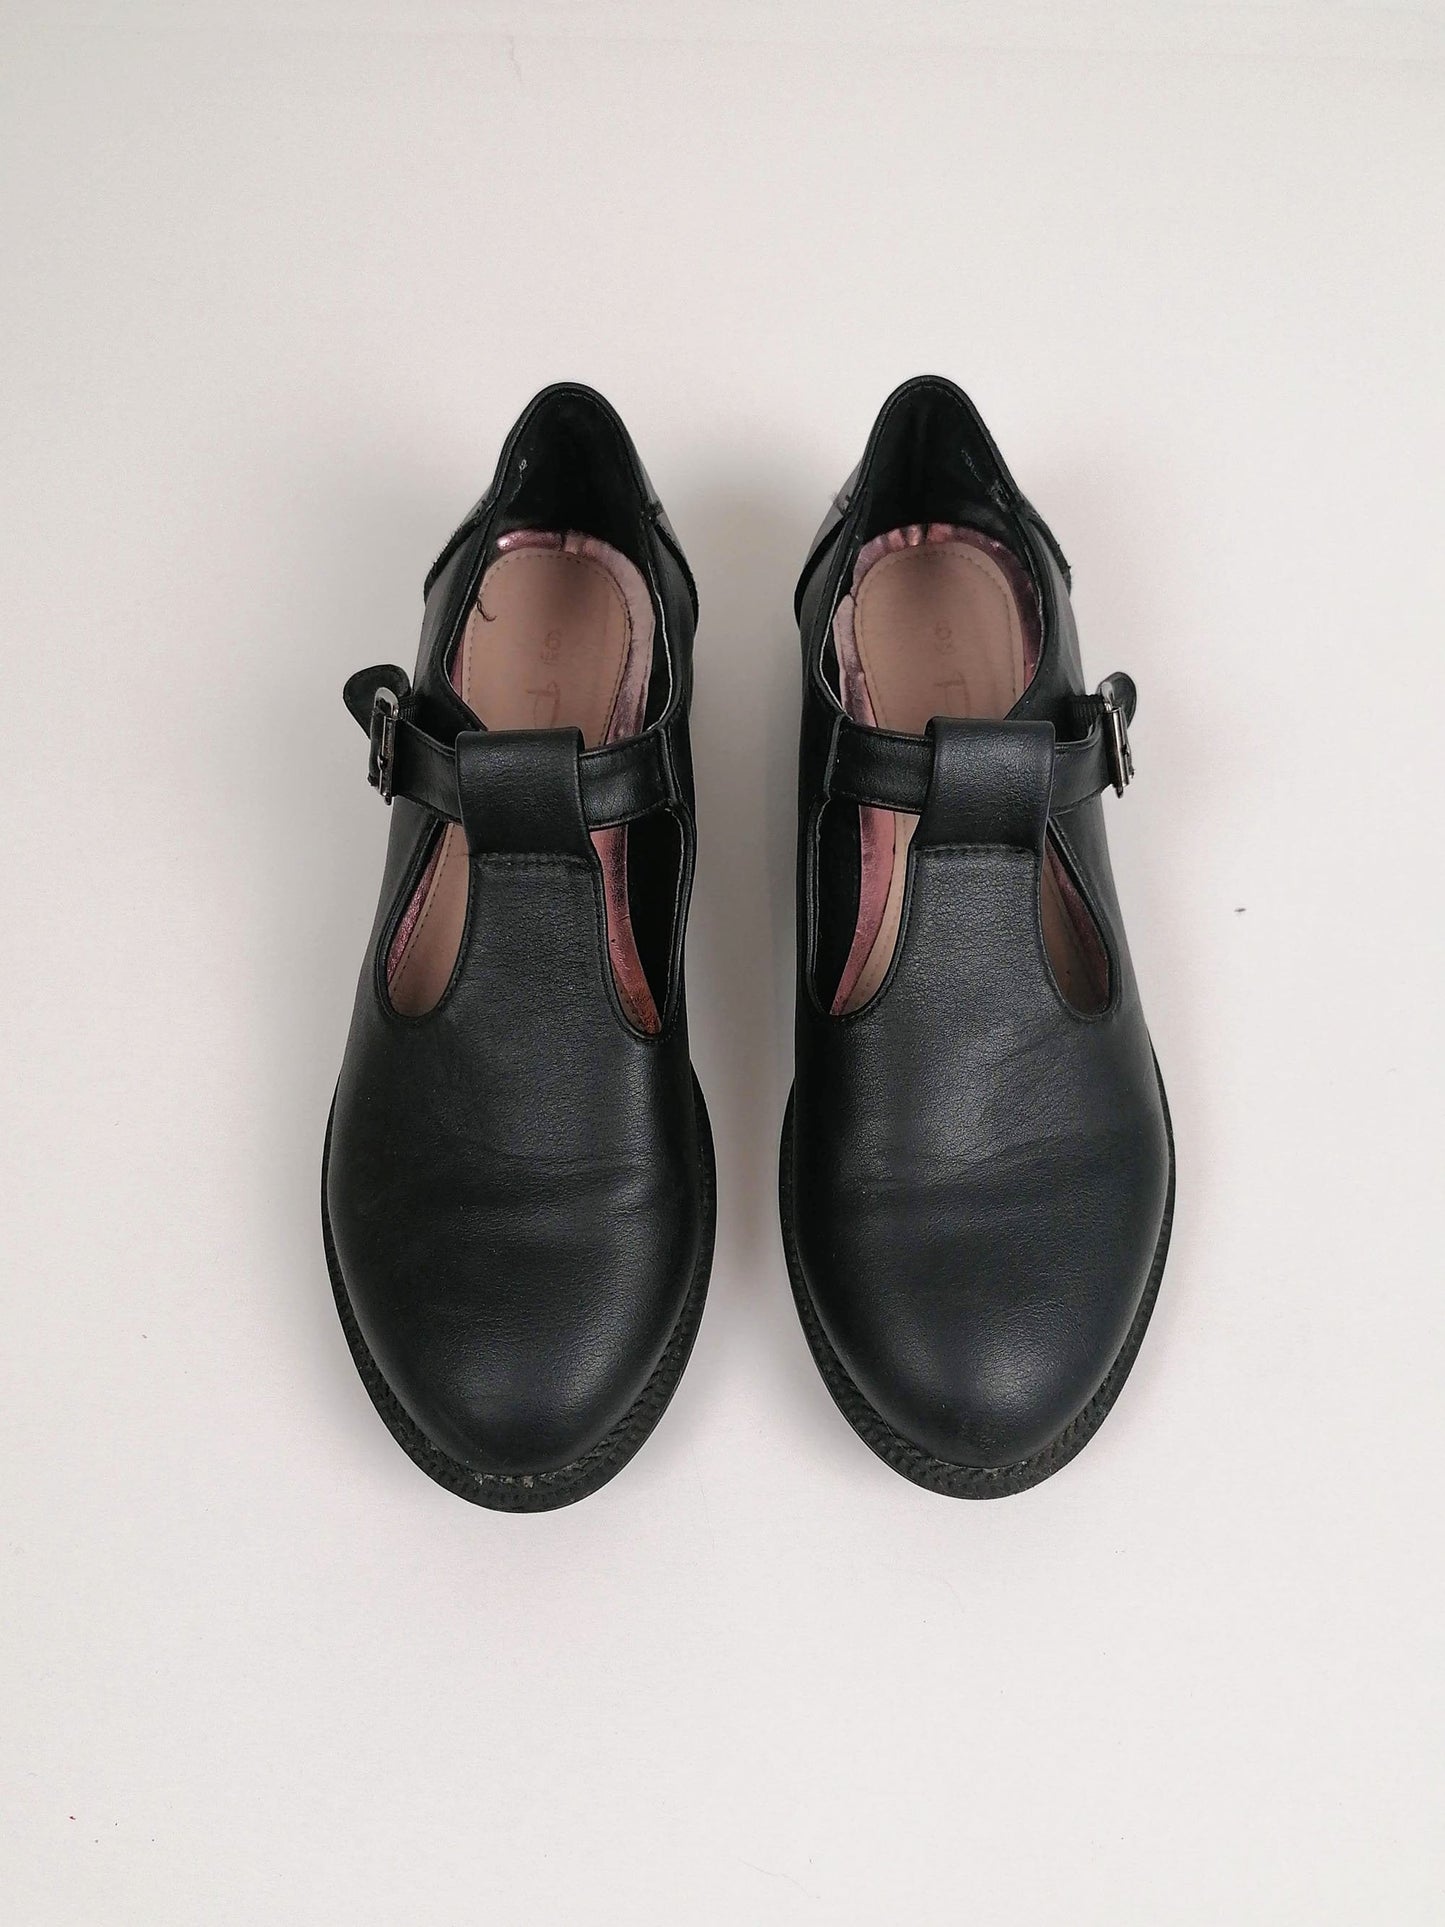 90's Mary-Janes Black Leather -  Size EU 39 / UK 6 / us 8